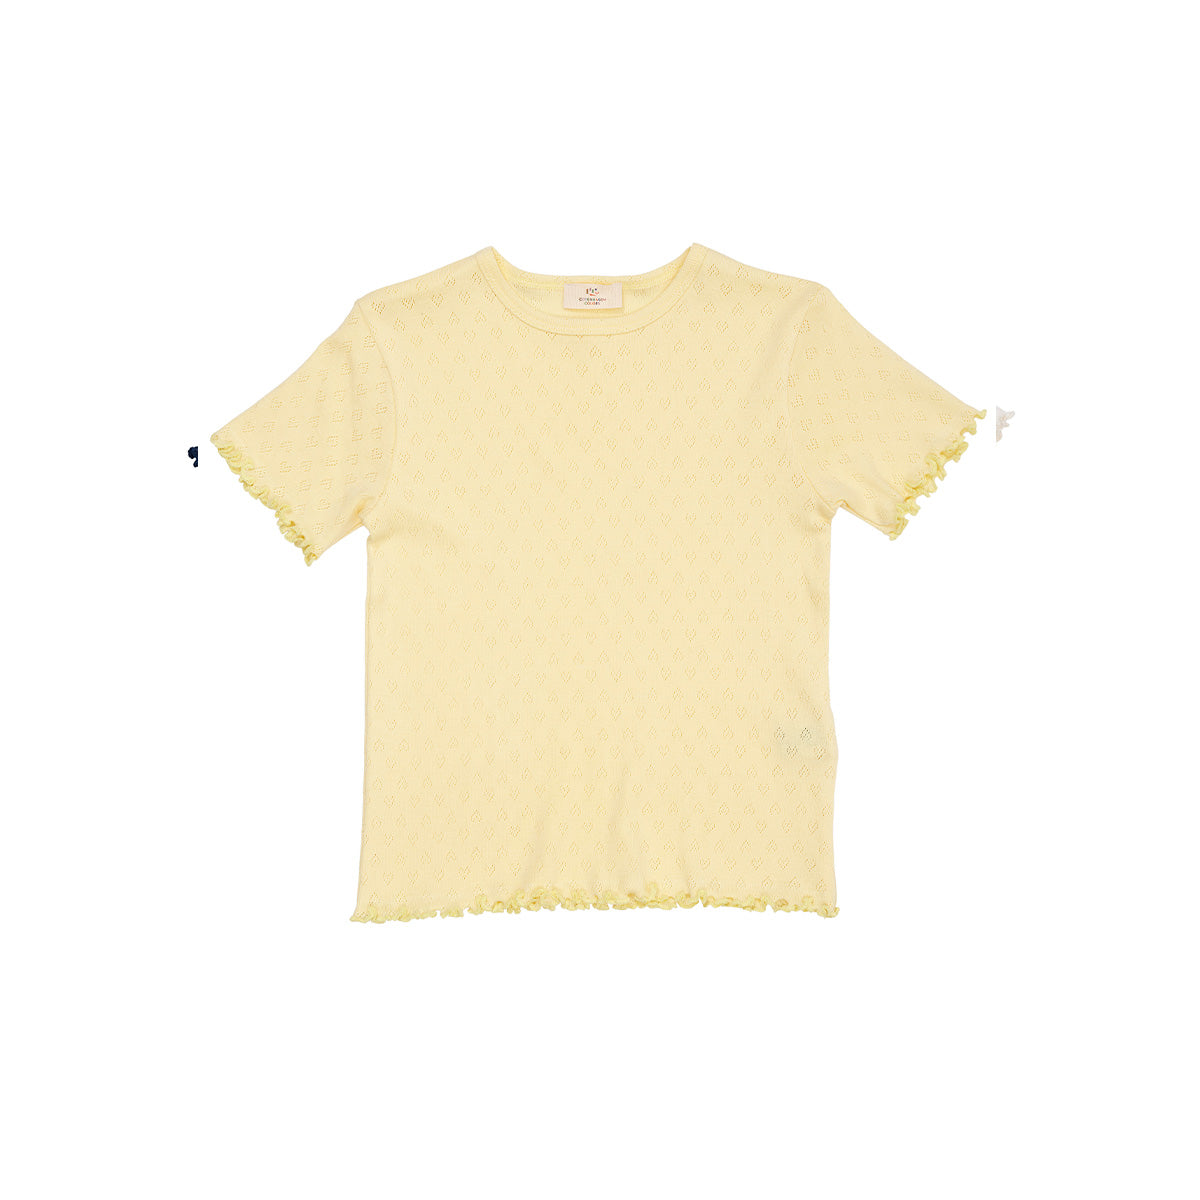 Een musthave: het pointelle heart t-shirt in kleur pale yellow van Copenhagen Colors. Een zachte stof met subtiel hartjes motief en golvend randje. Hip! Te koop in maten 80 t/m 128 en diverse kleuren. VanZus